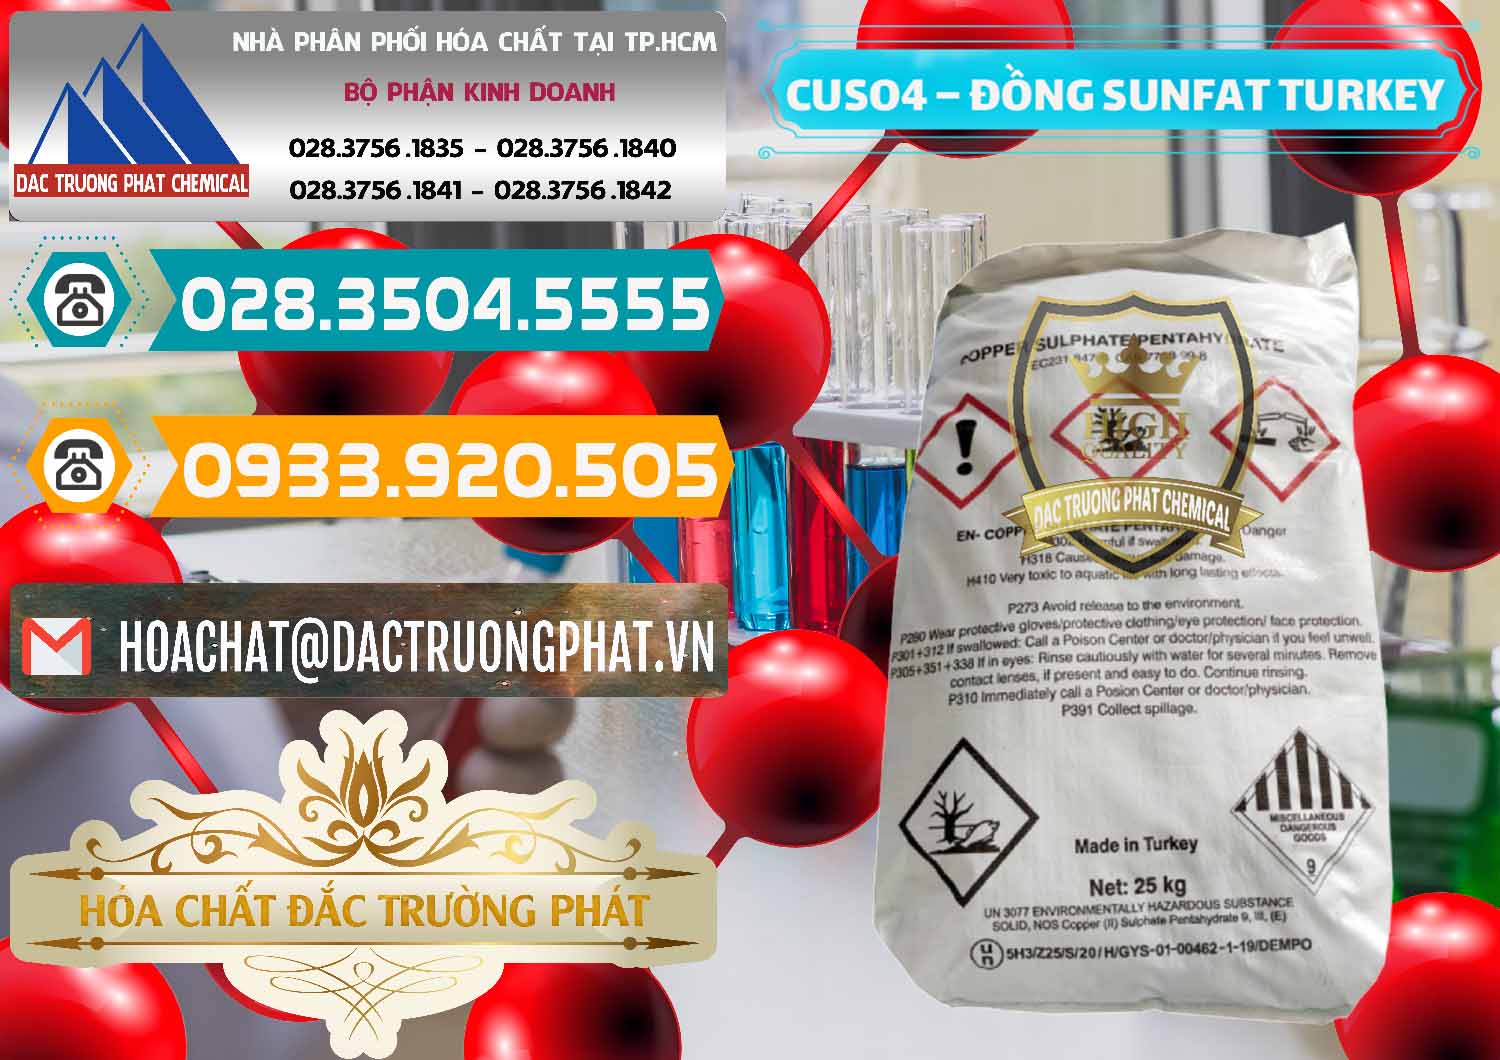 Đơn vị cung cấp & bán CuSO4 – Đồng Sunfat Thổ Nhĩ Kỳ Turkey - 0481 - Phân phối ( bán ) hóa chất tại TP.HCM - congtyhoachat.vn